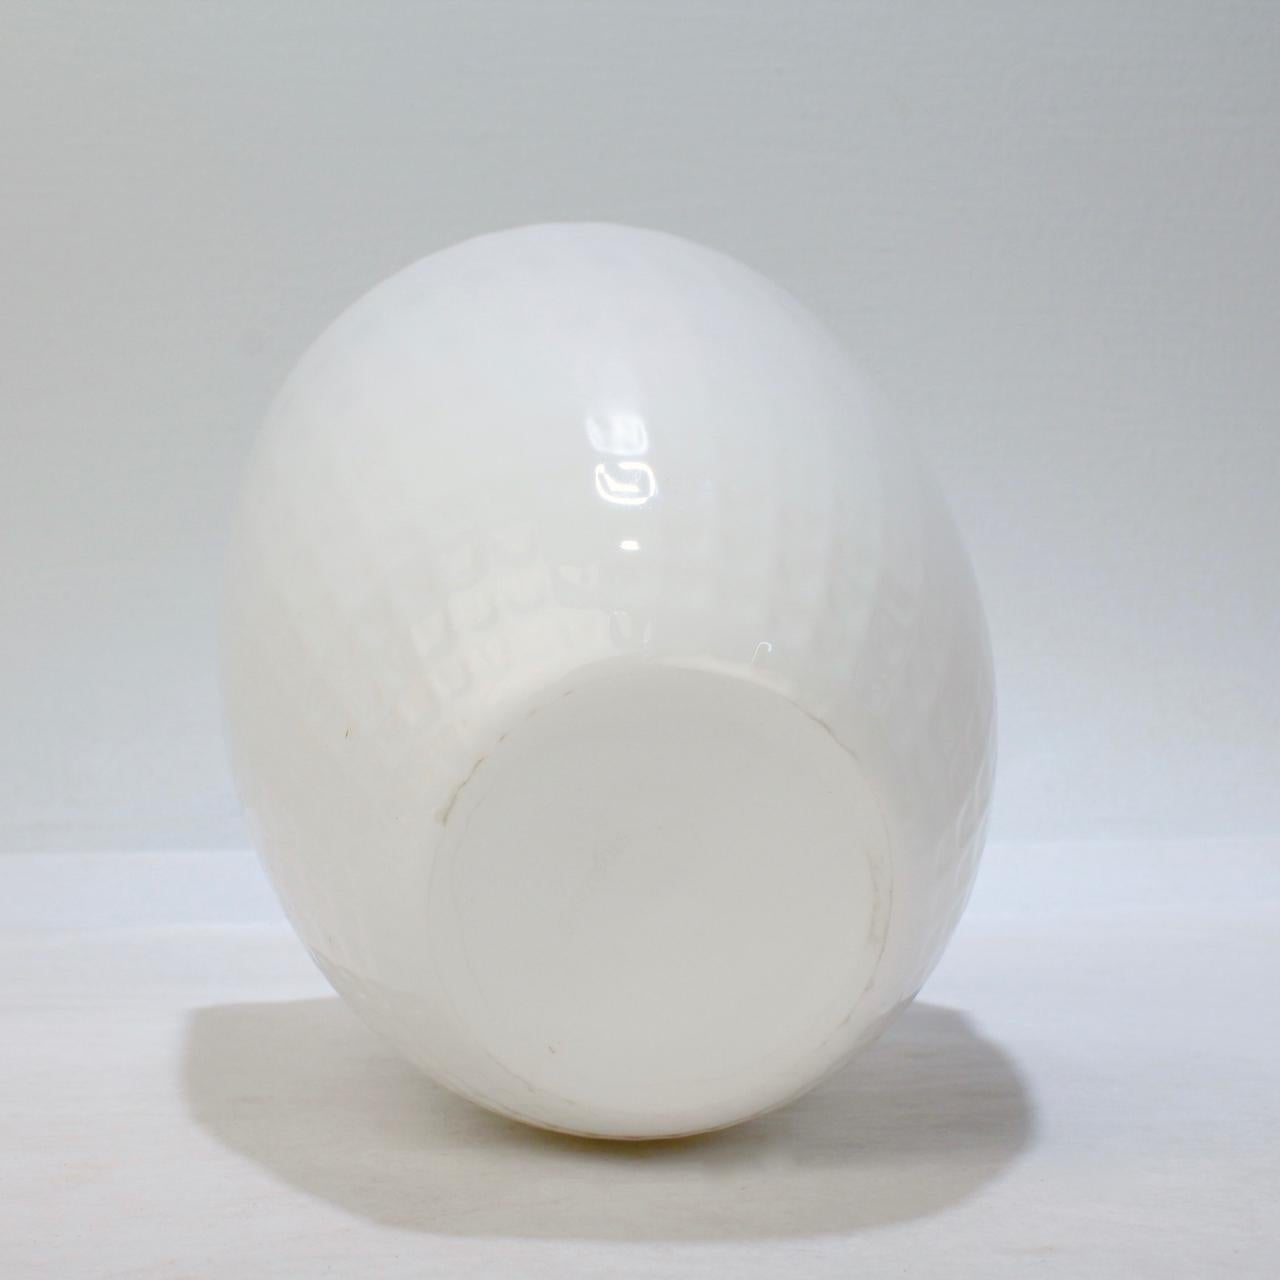 Snöljus Snowlight White Art Glass Vase by Ingegerd Råman for Orrefors In Good Condition For Sale In Philadelphia, PA